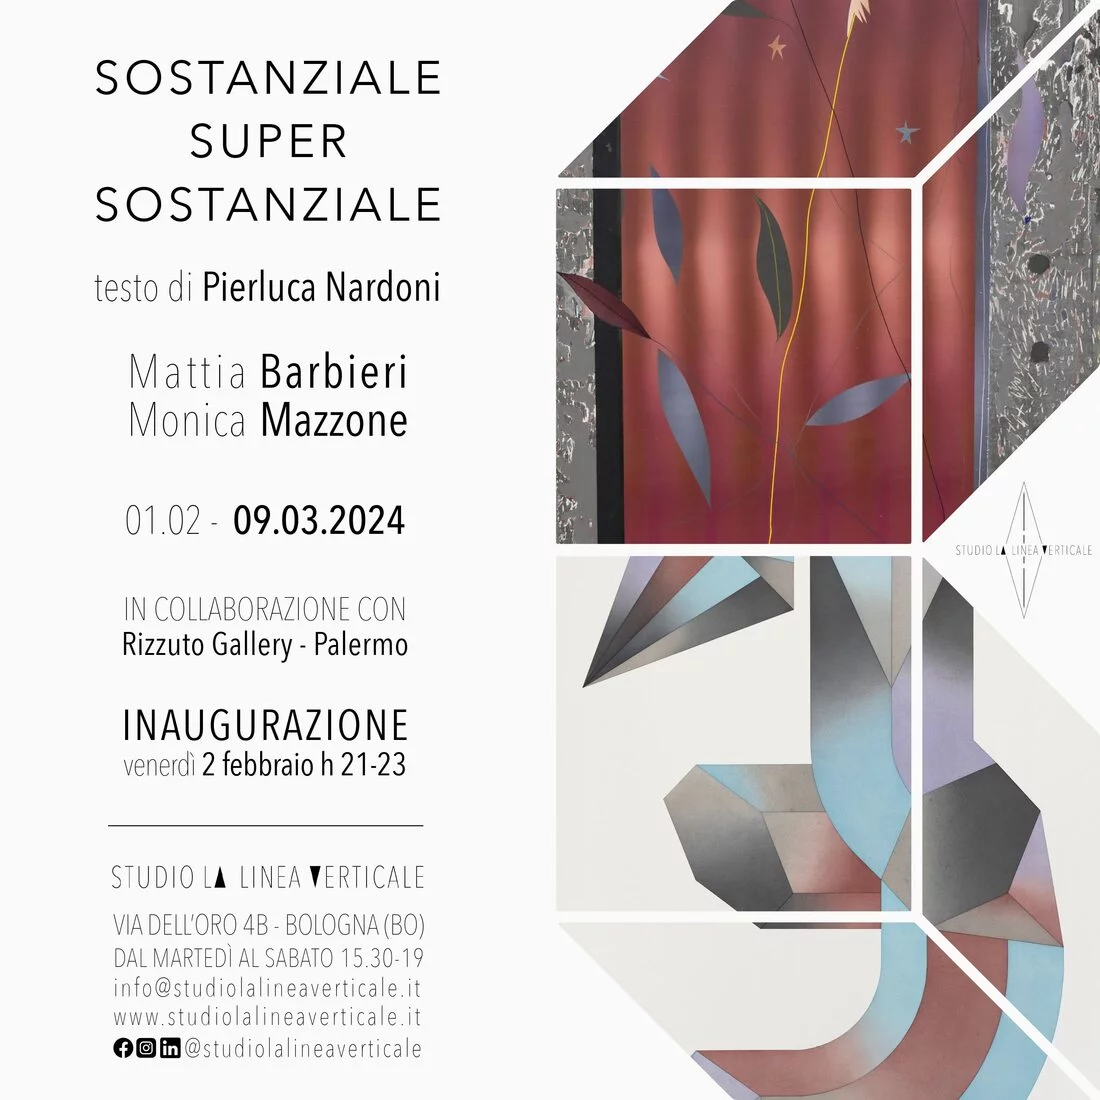 Sostanziale-Super-Sostanziale. Mattia Barbieri / Monica Mazzone